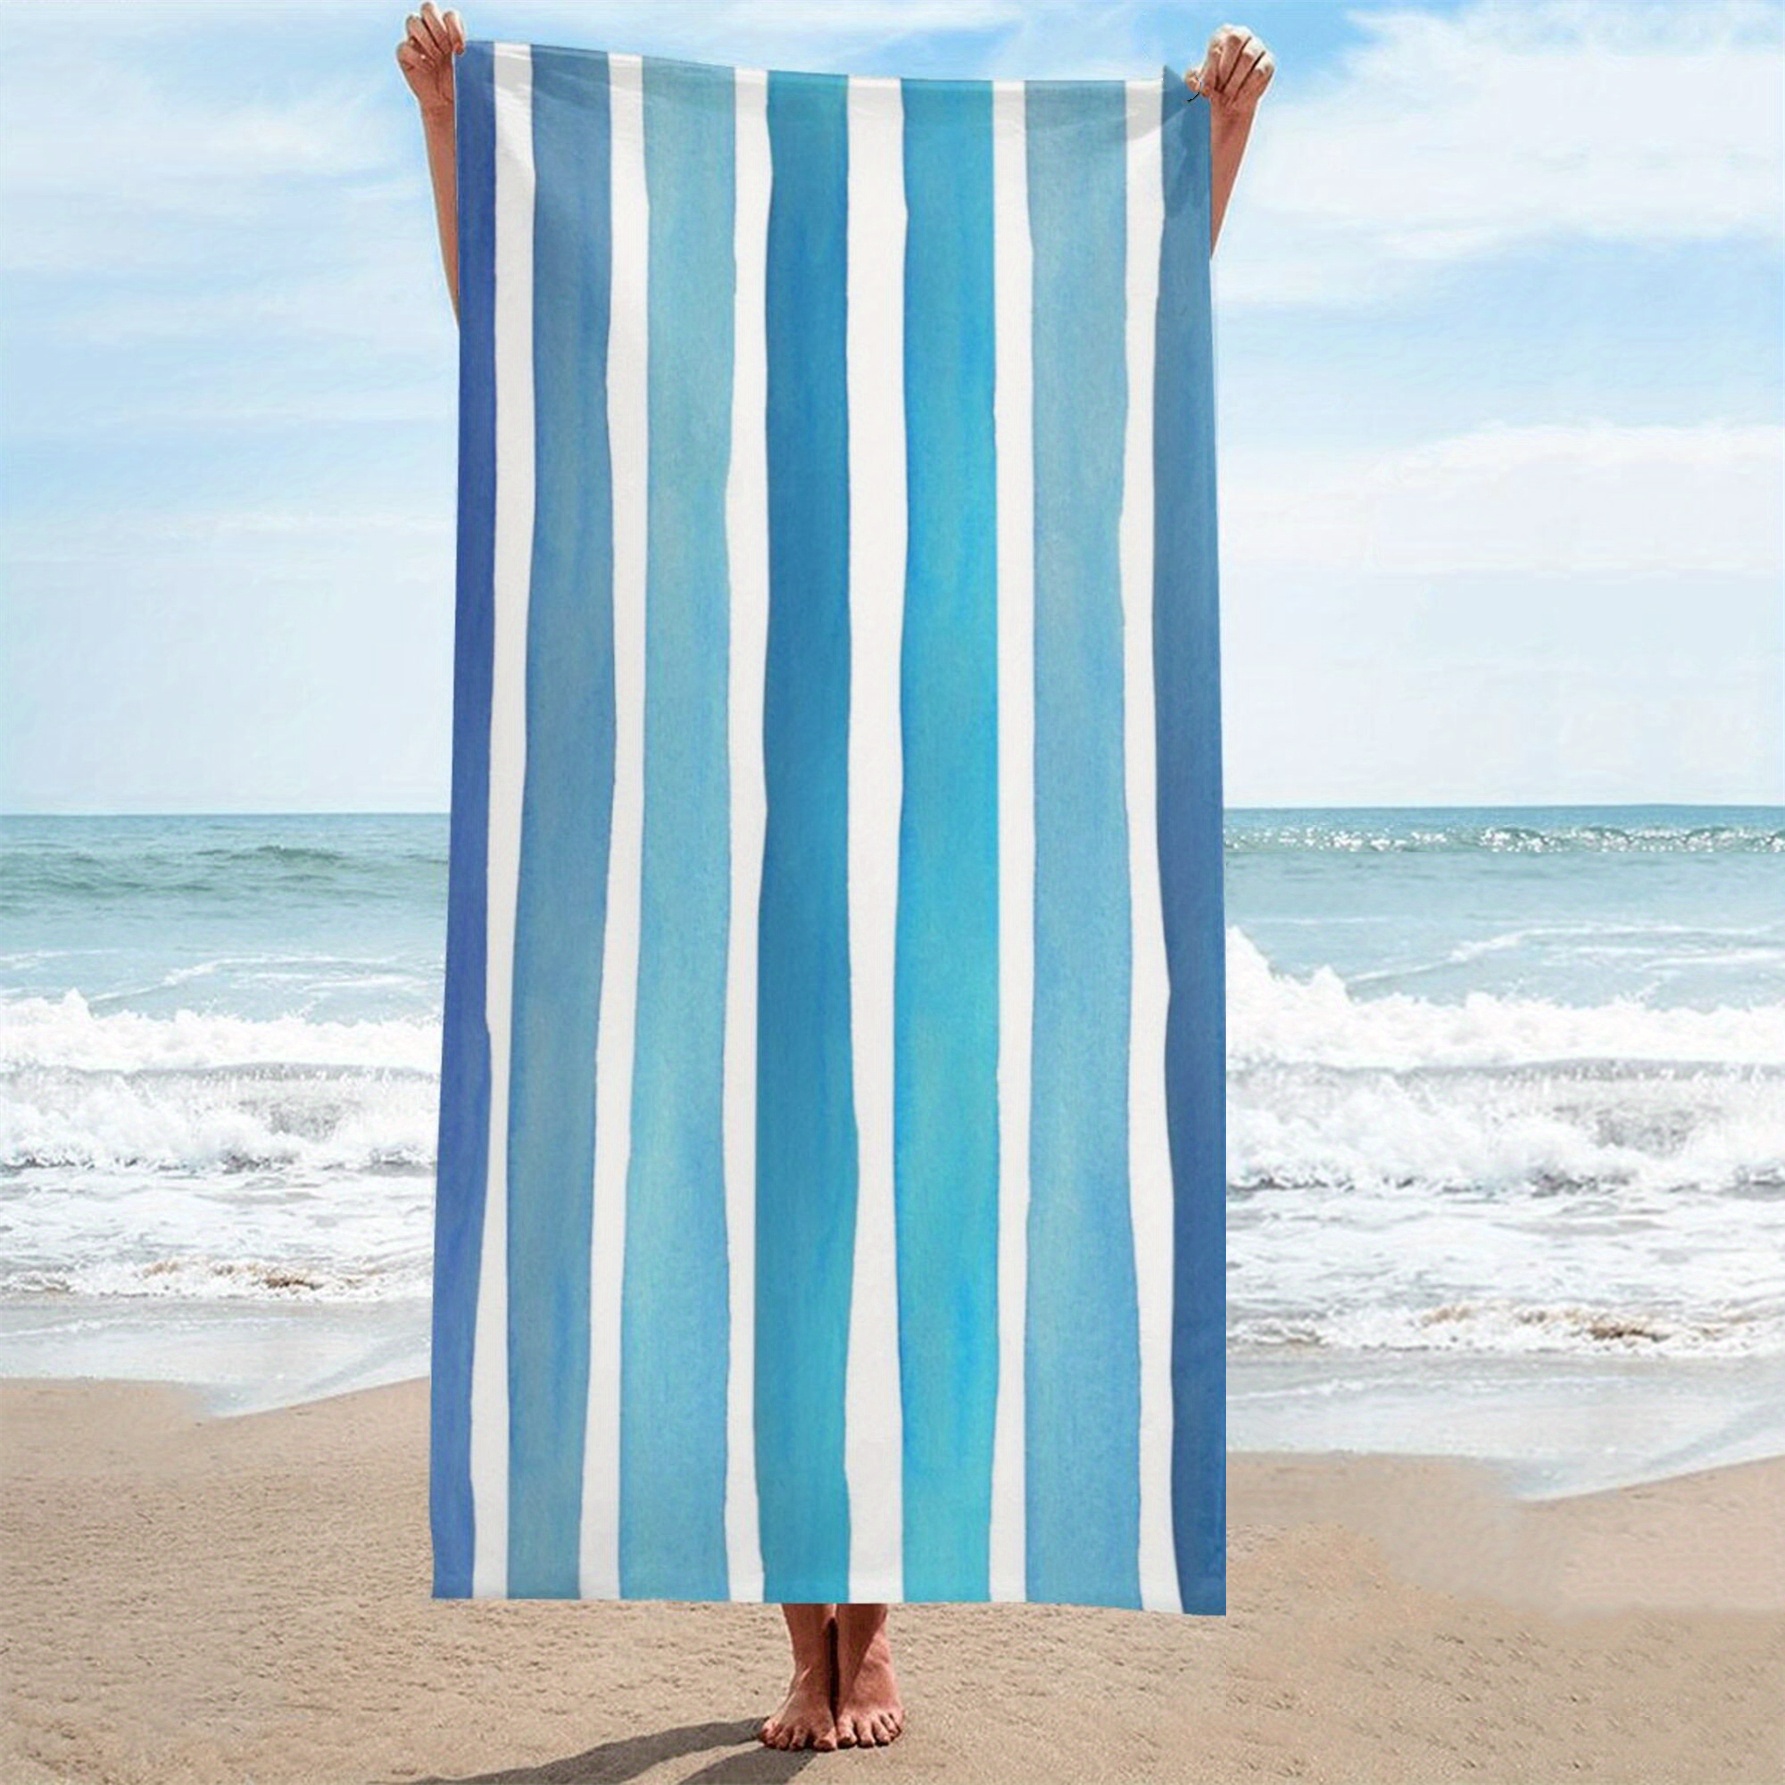 Comprar Toalla de baño de microfibra Extra grande, 70x140cm, toalla de ducha  de playa suave y absorbente de secado rápido para el hogar